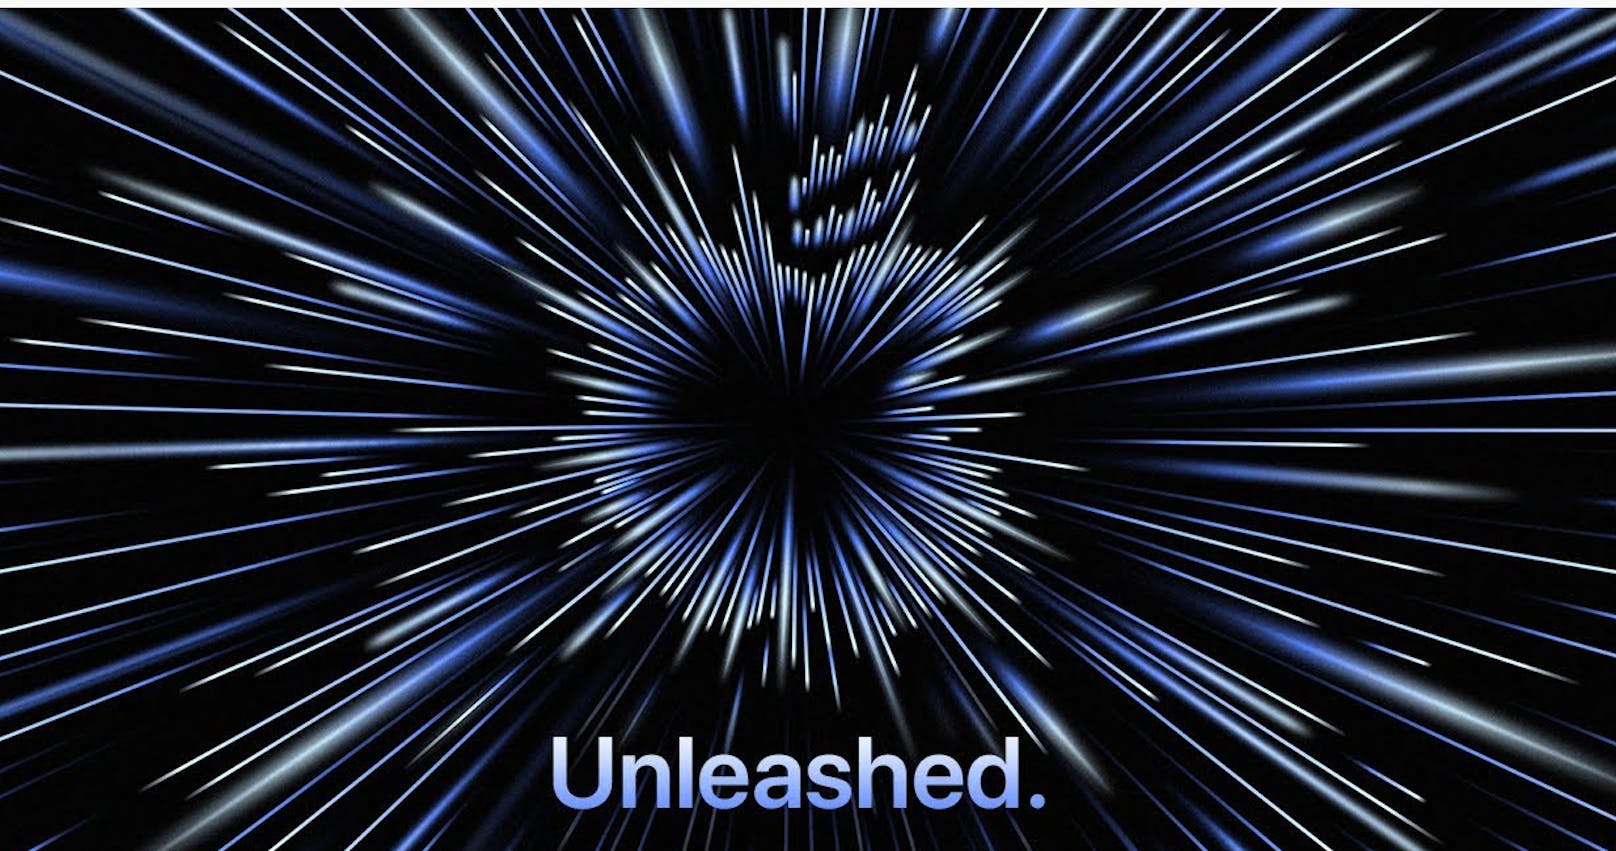 Das Event vom Montagabend fand unter dem Zeichen "unleashed" – entfesselt – statt. Das Aussehen des Startbildes beim Apple-Stream erinnerte stark an "Star Wars".